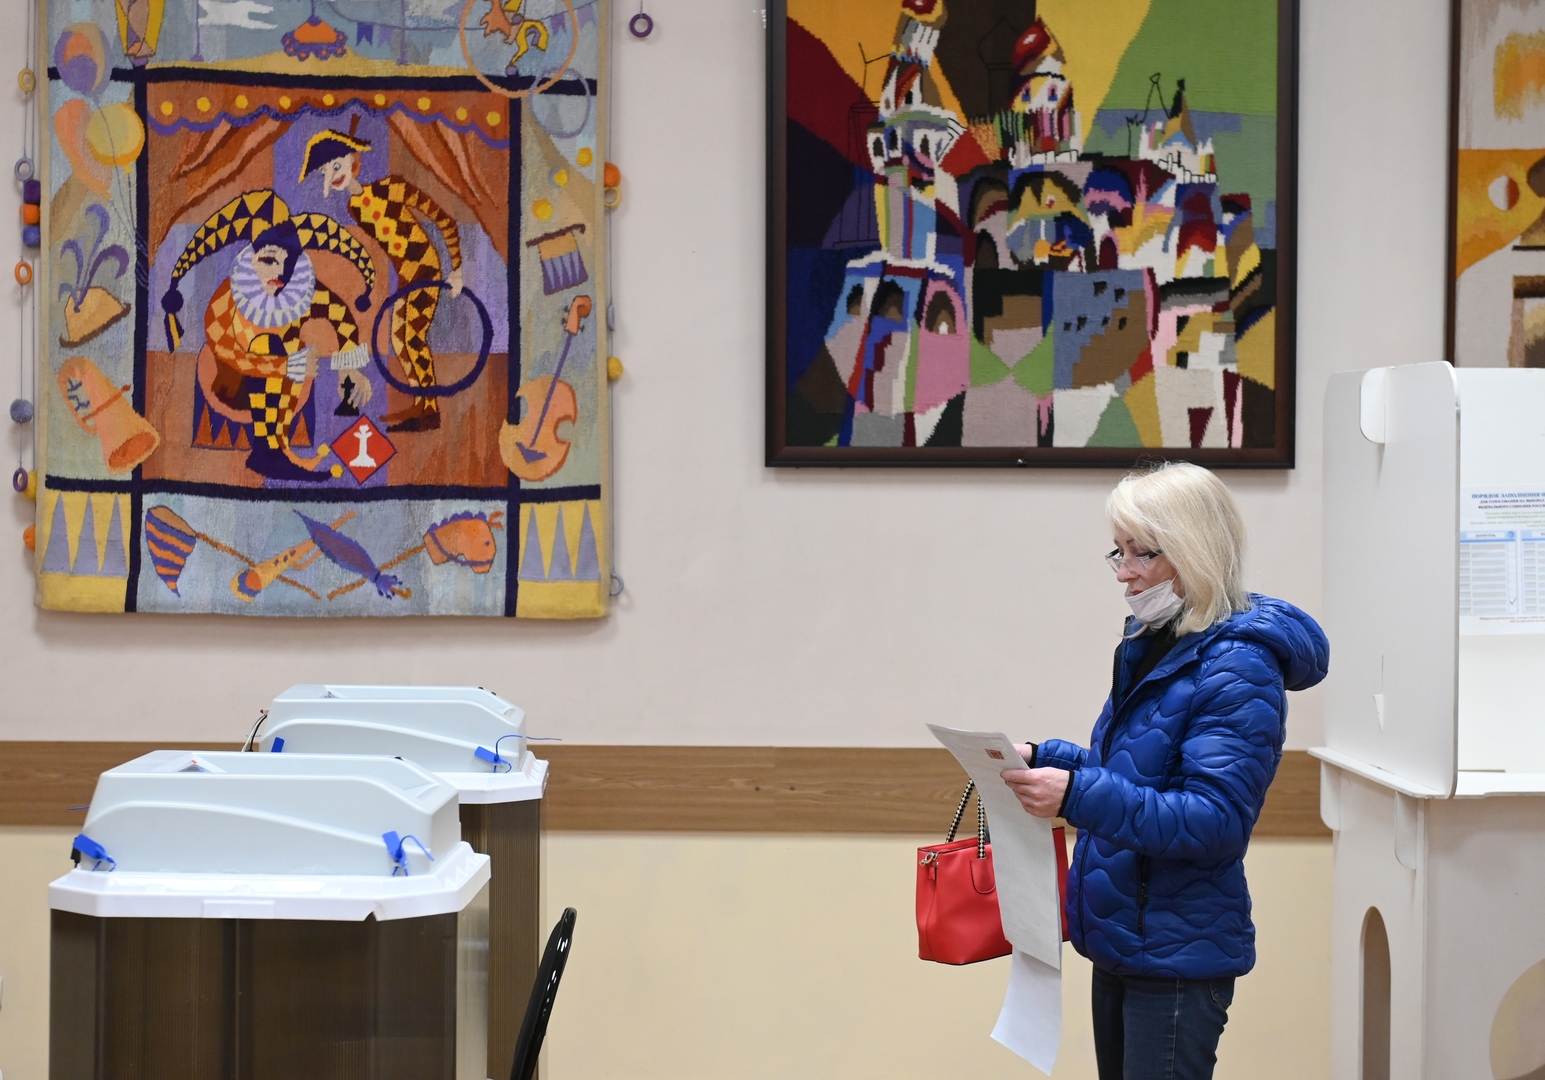 عمليات التصويت لانتخابات مجلس الدوما خارج روسيا مستمرة